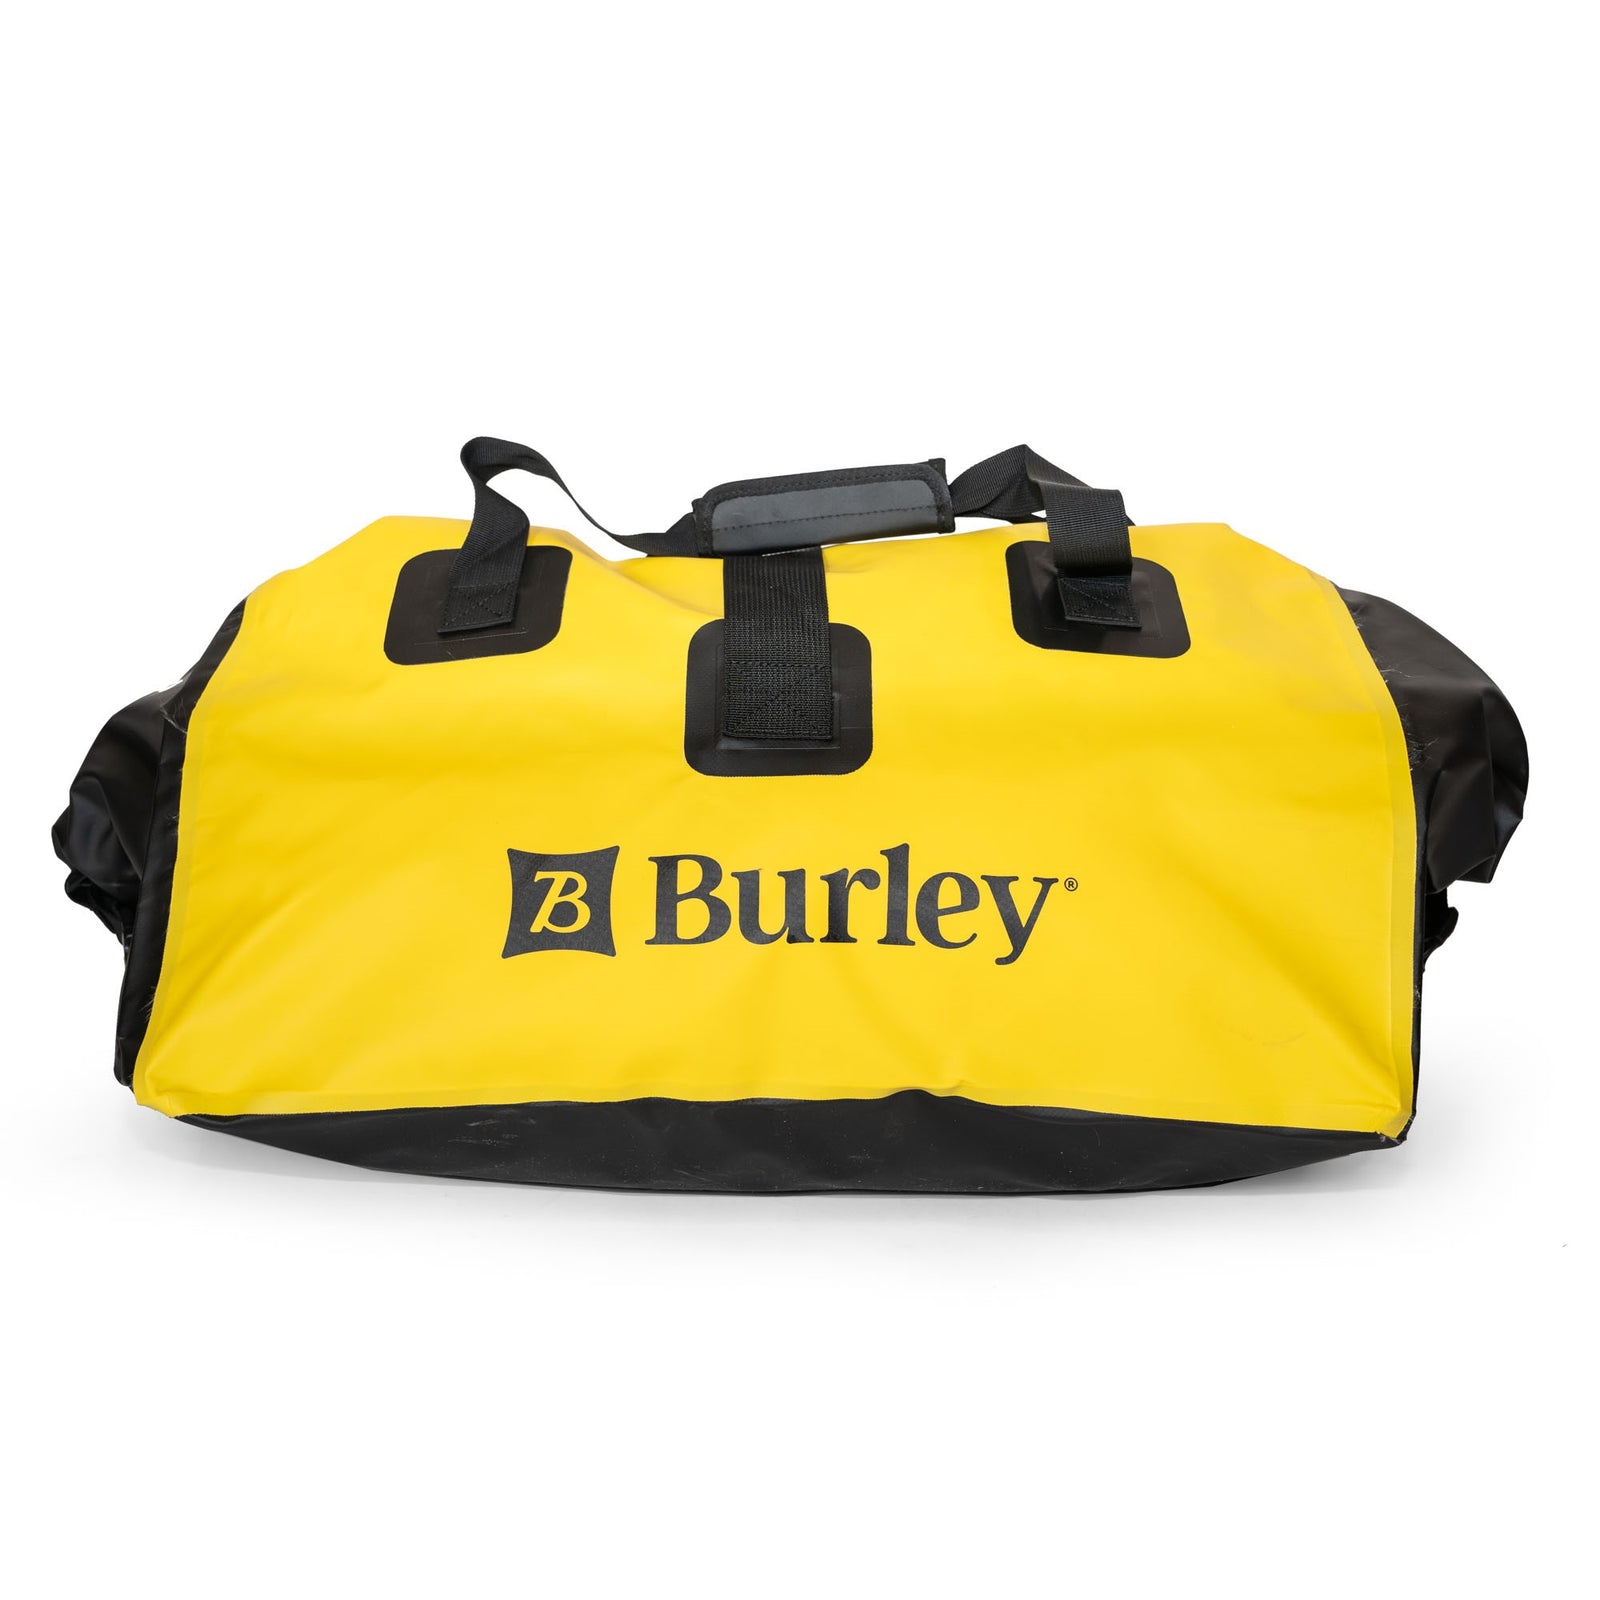 Bike Cargo Accessories - Burley